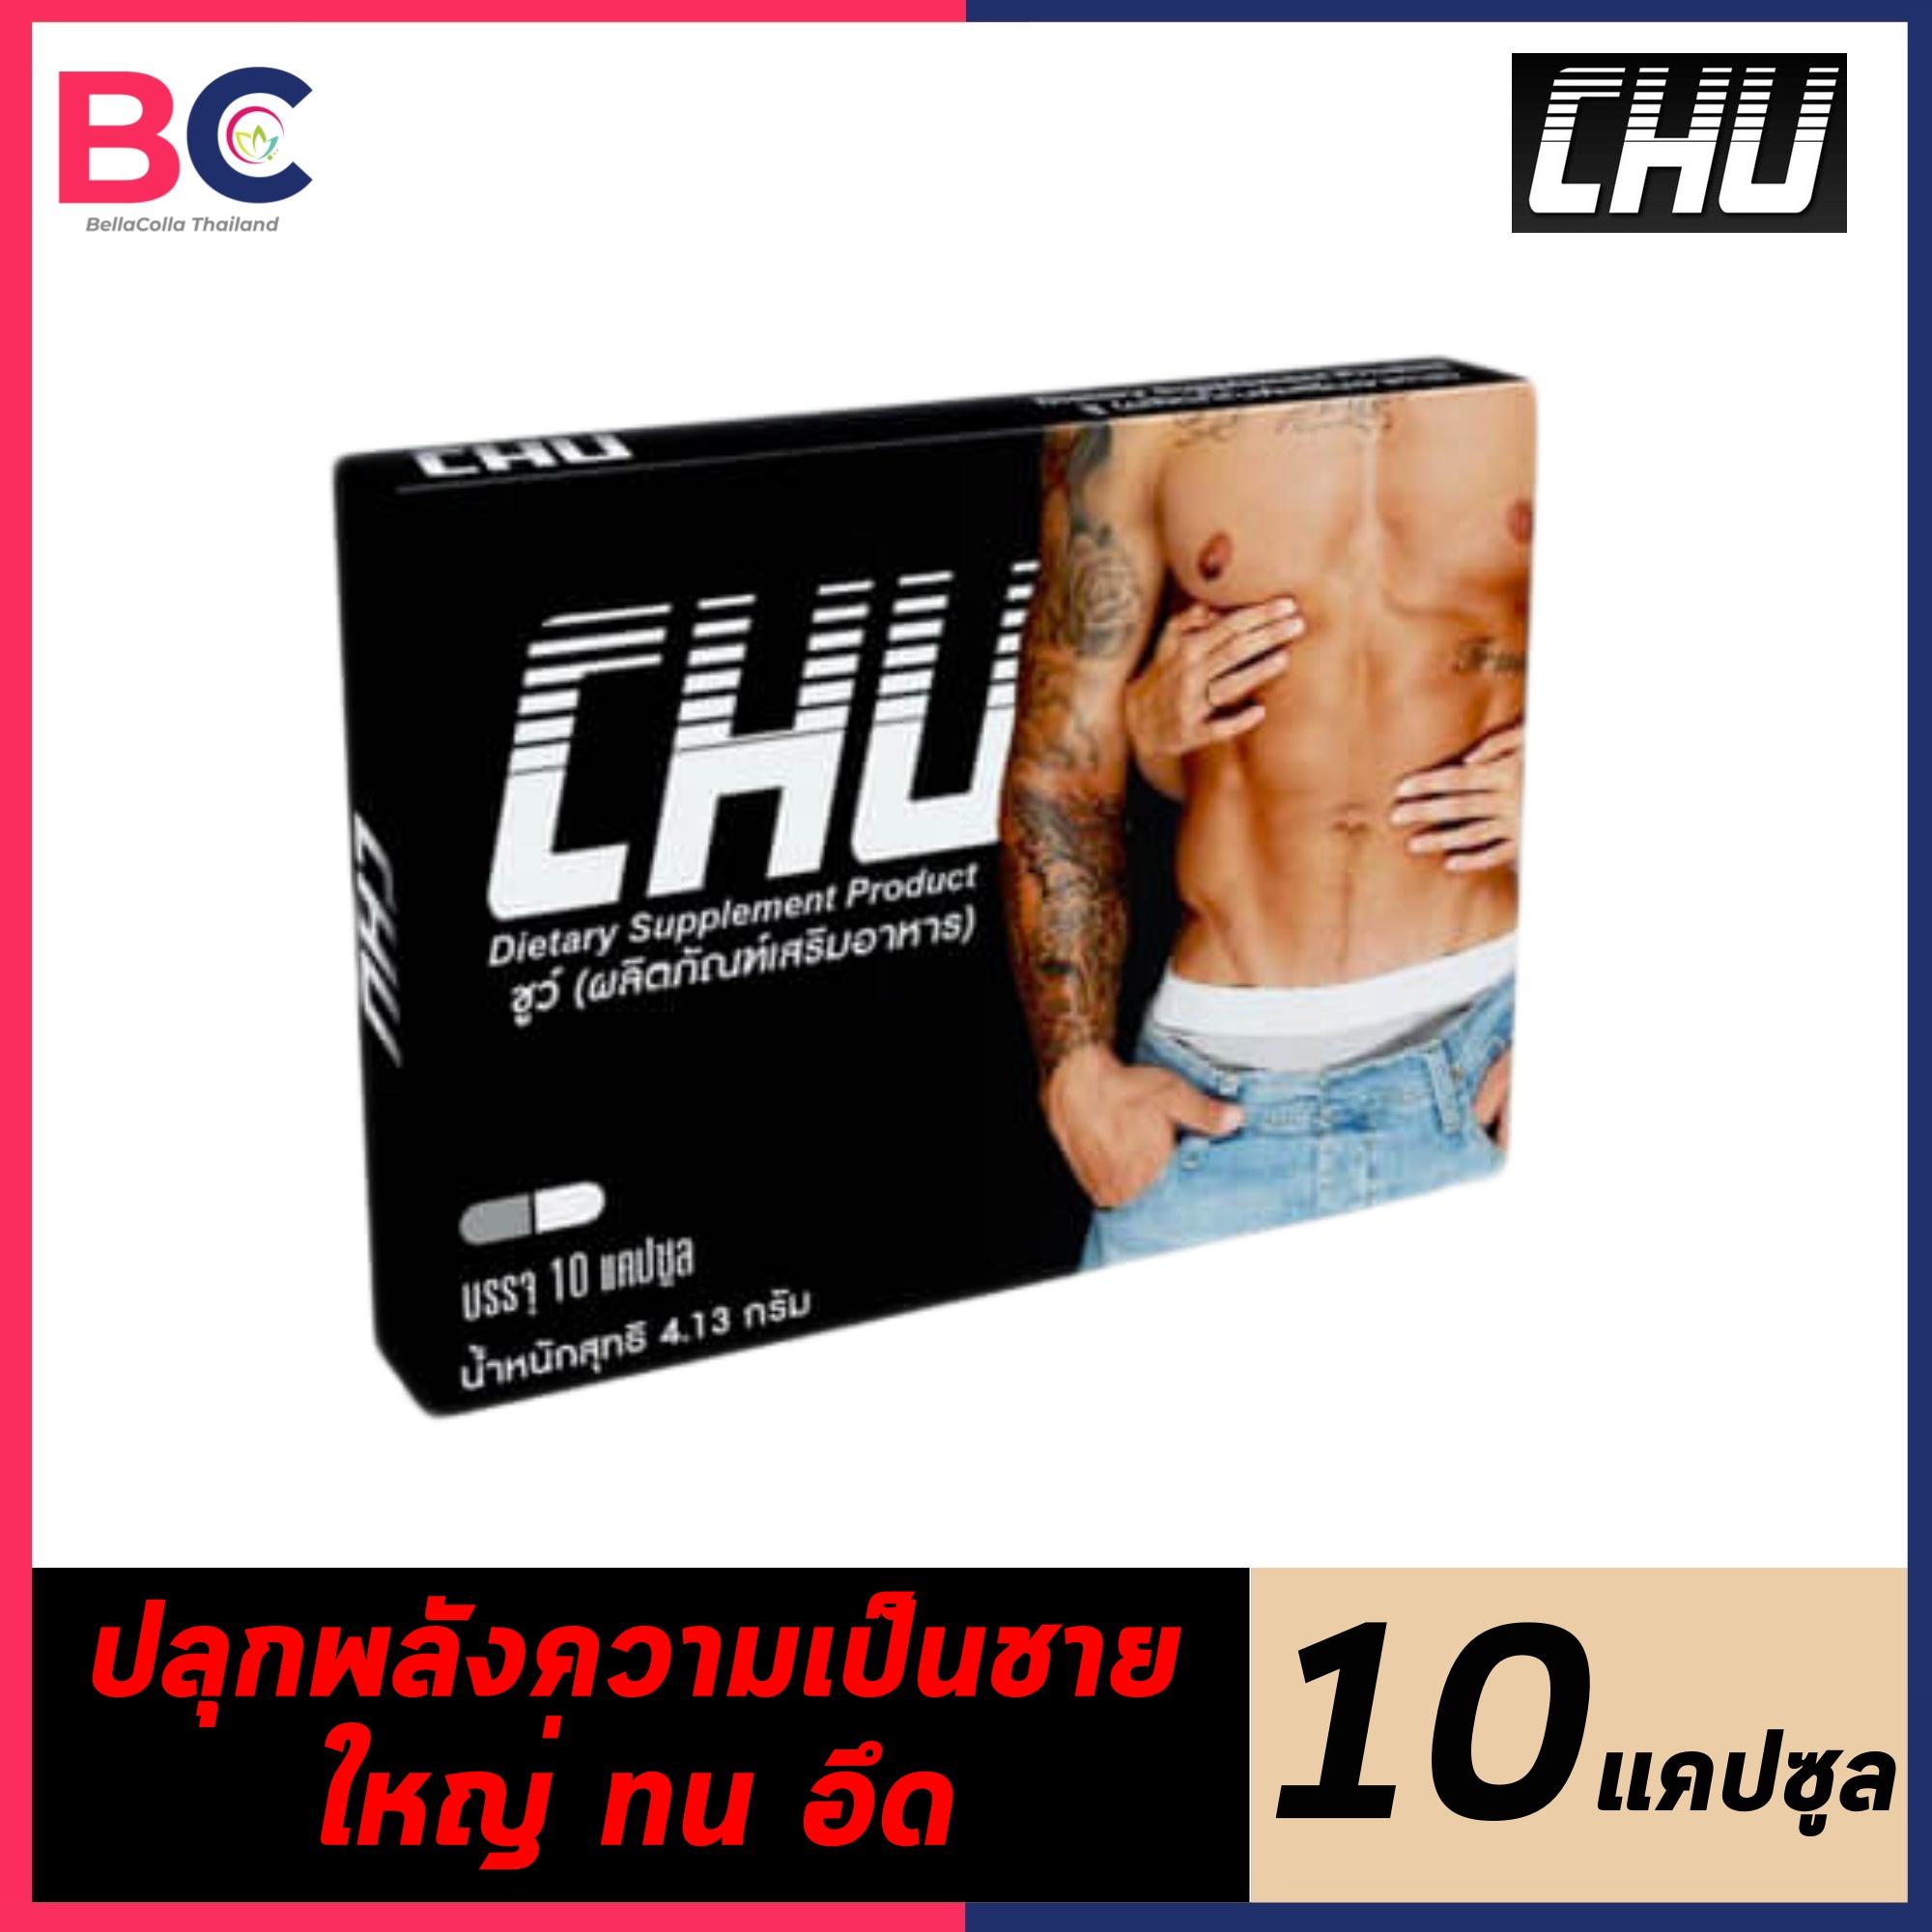 CHU ชูว์ [1 กล่อง] [10 แคปซูล] ผลิตภัณฑ์อาหารเสริม by BellaColla Thailand